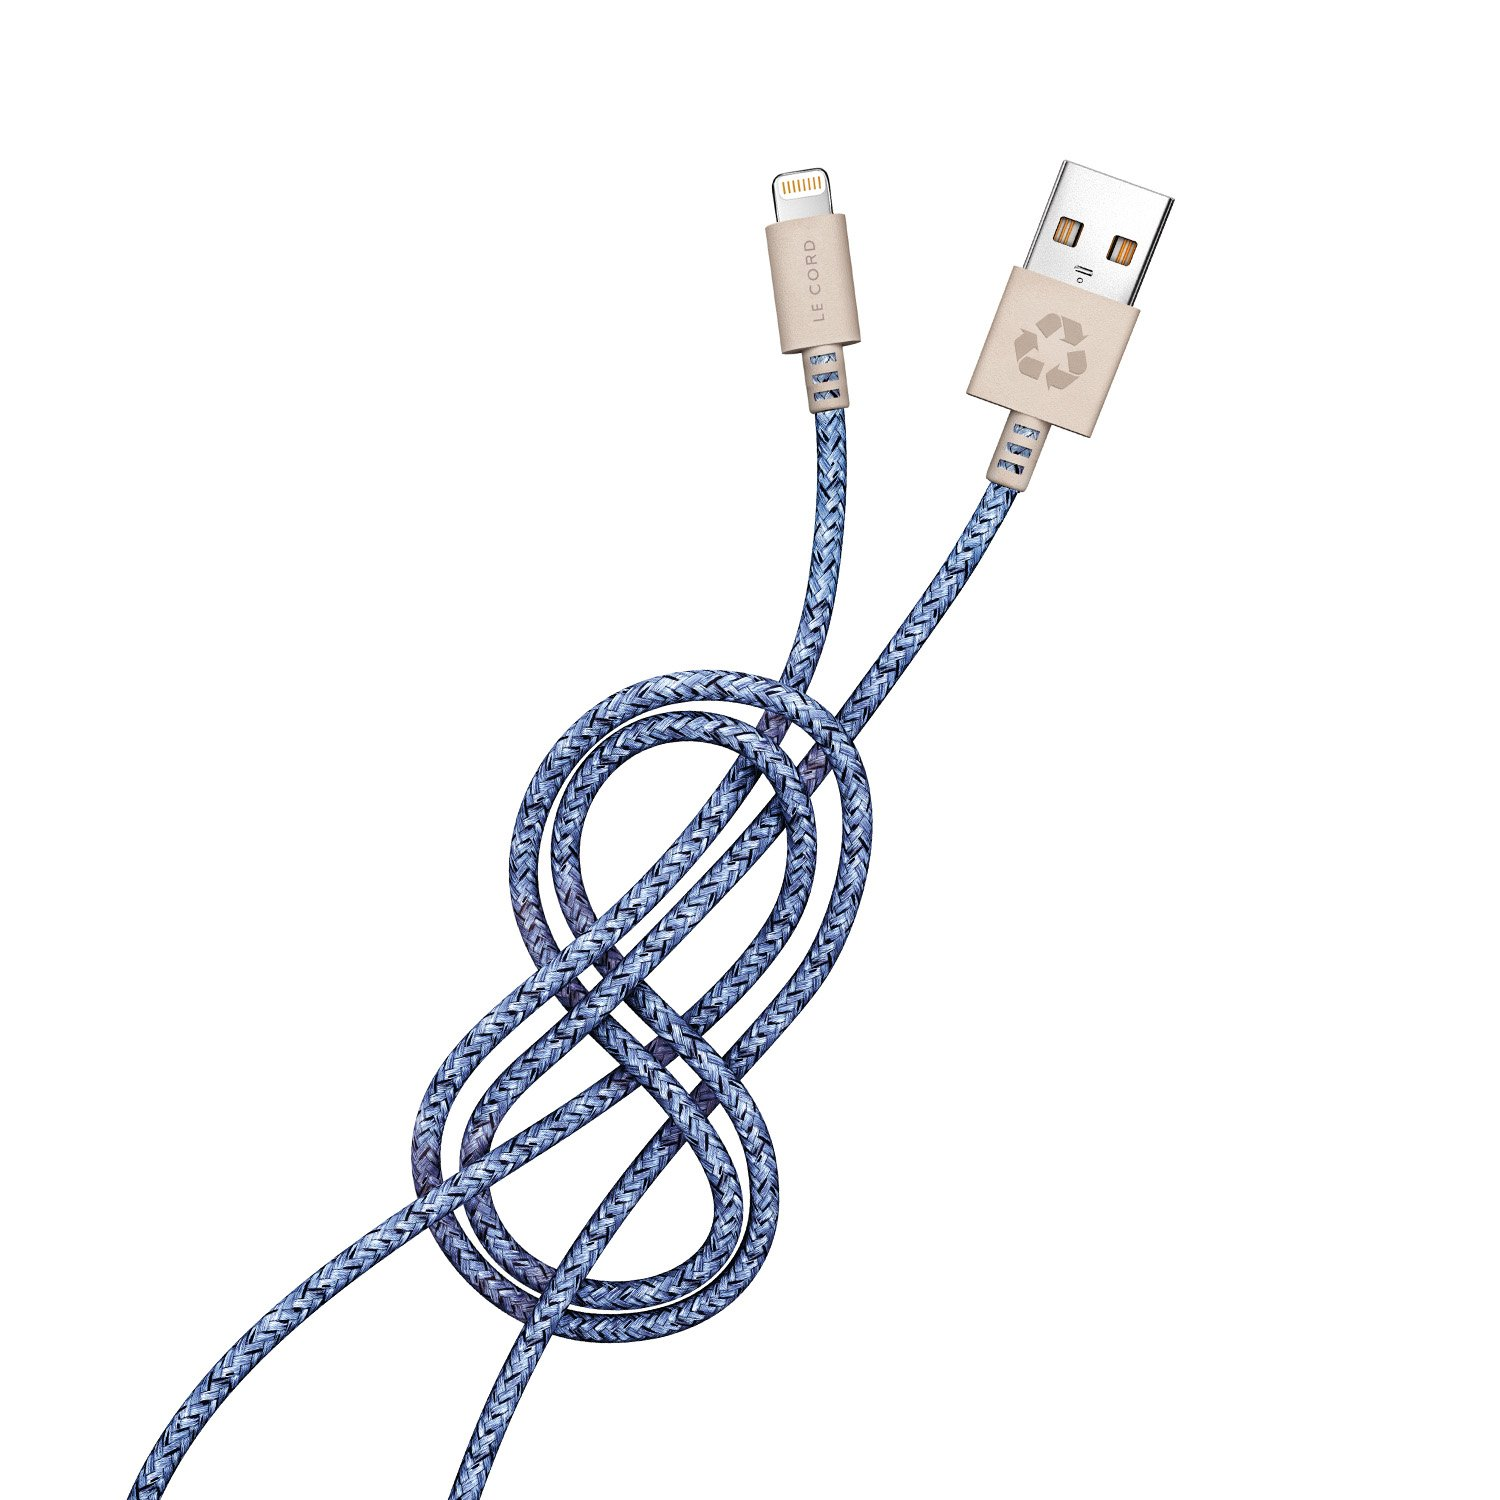 Kabel Lightning Bleu LE iPhone CORD recyceltes